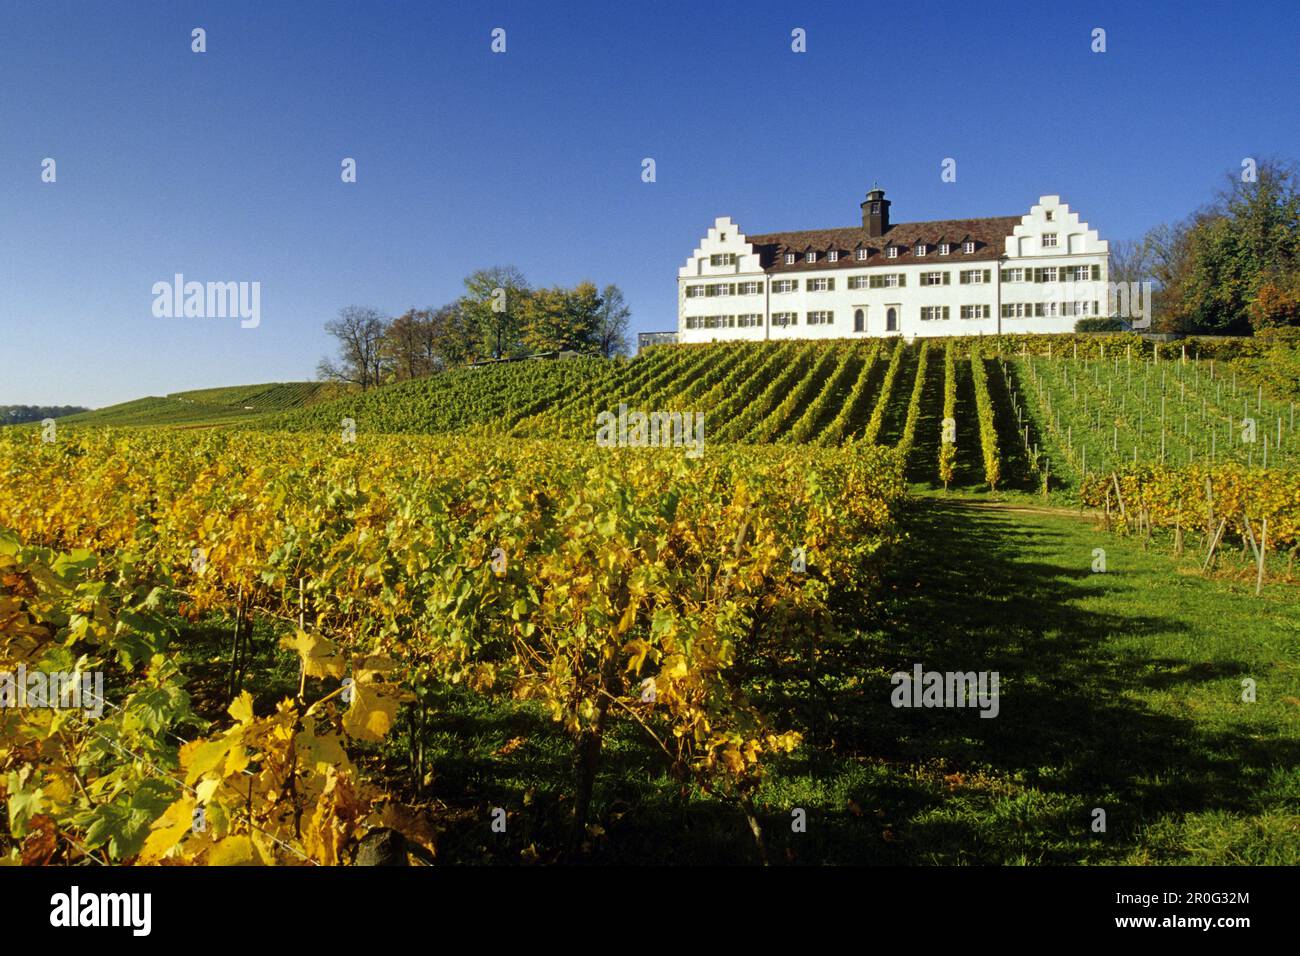 Vignoble au château d'Hersberg, près d'Immenstaad, Lac de Constance, Bade-Wurtemberg, Allemagne Banque D'Images